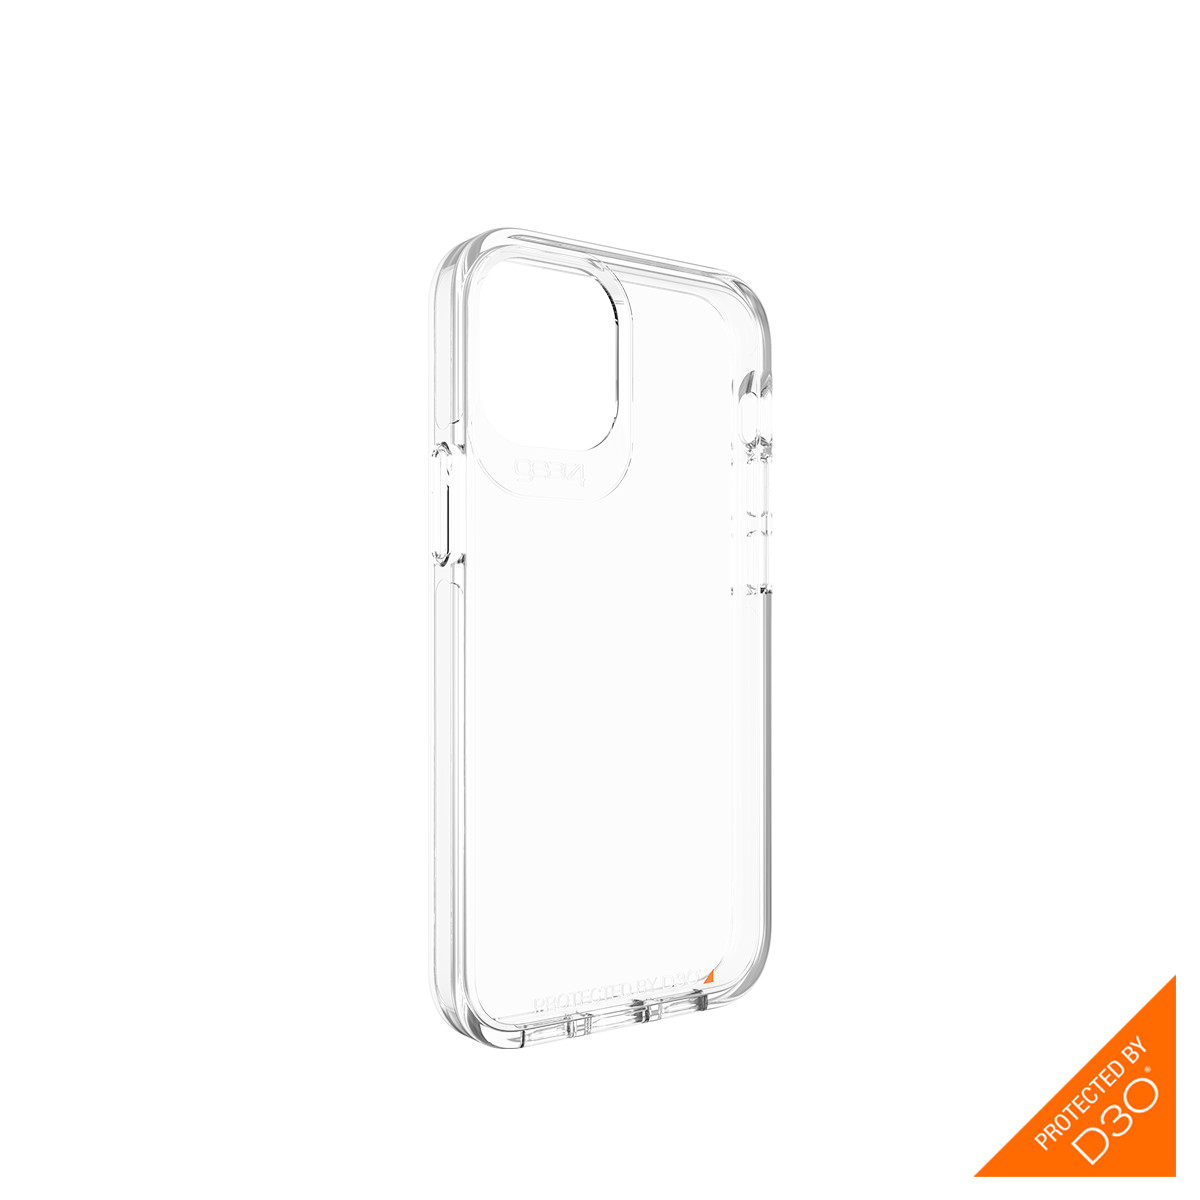 Ốp lưng chống sốc Gear4 D3O Crystal Palace iPhone - Công nghệ chống sốc độc quyền D3O, kháng khuẩn, tương thích tốt với sóng 5G - Hàng chính hãng